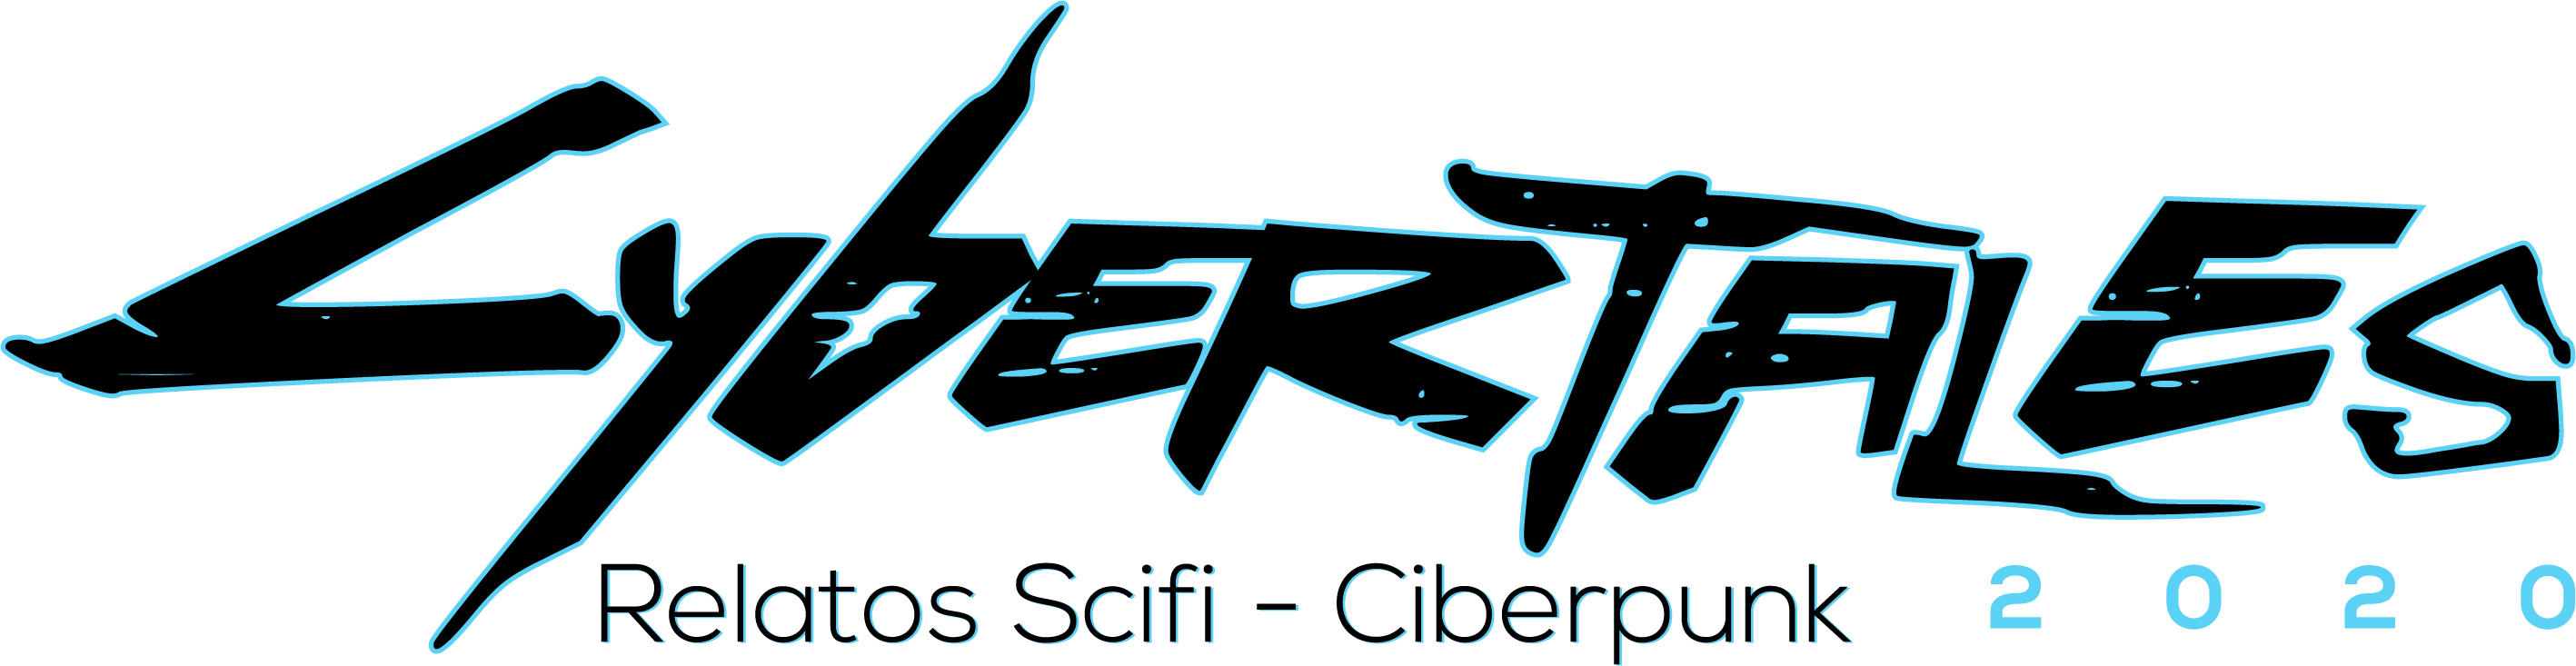 Logo Cybertales2020 relatos de ciencia ficción 